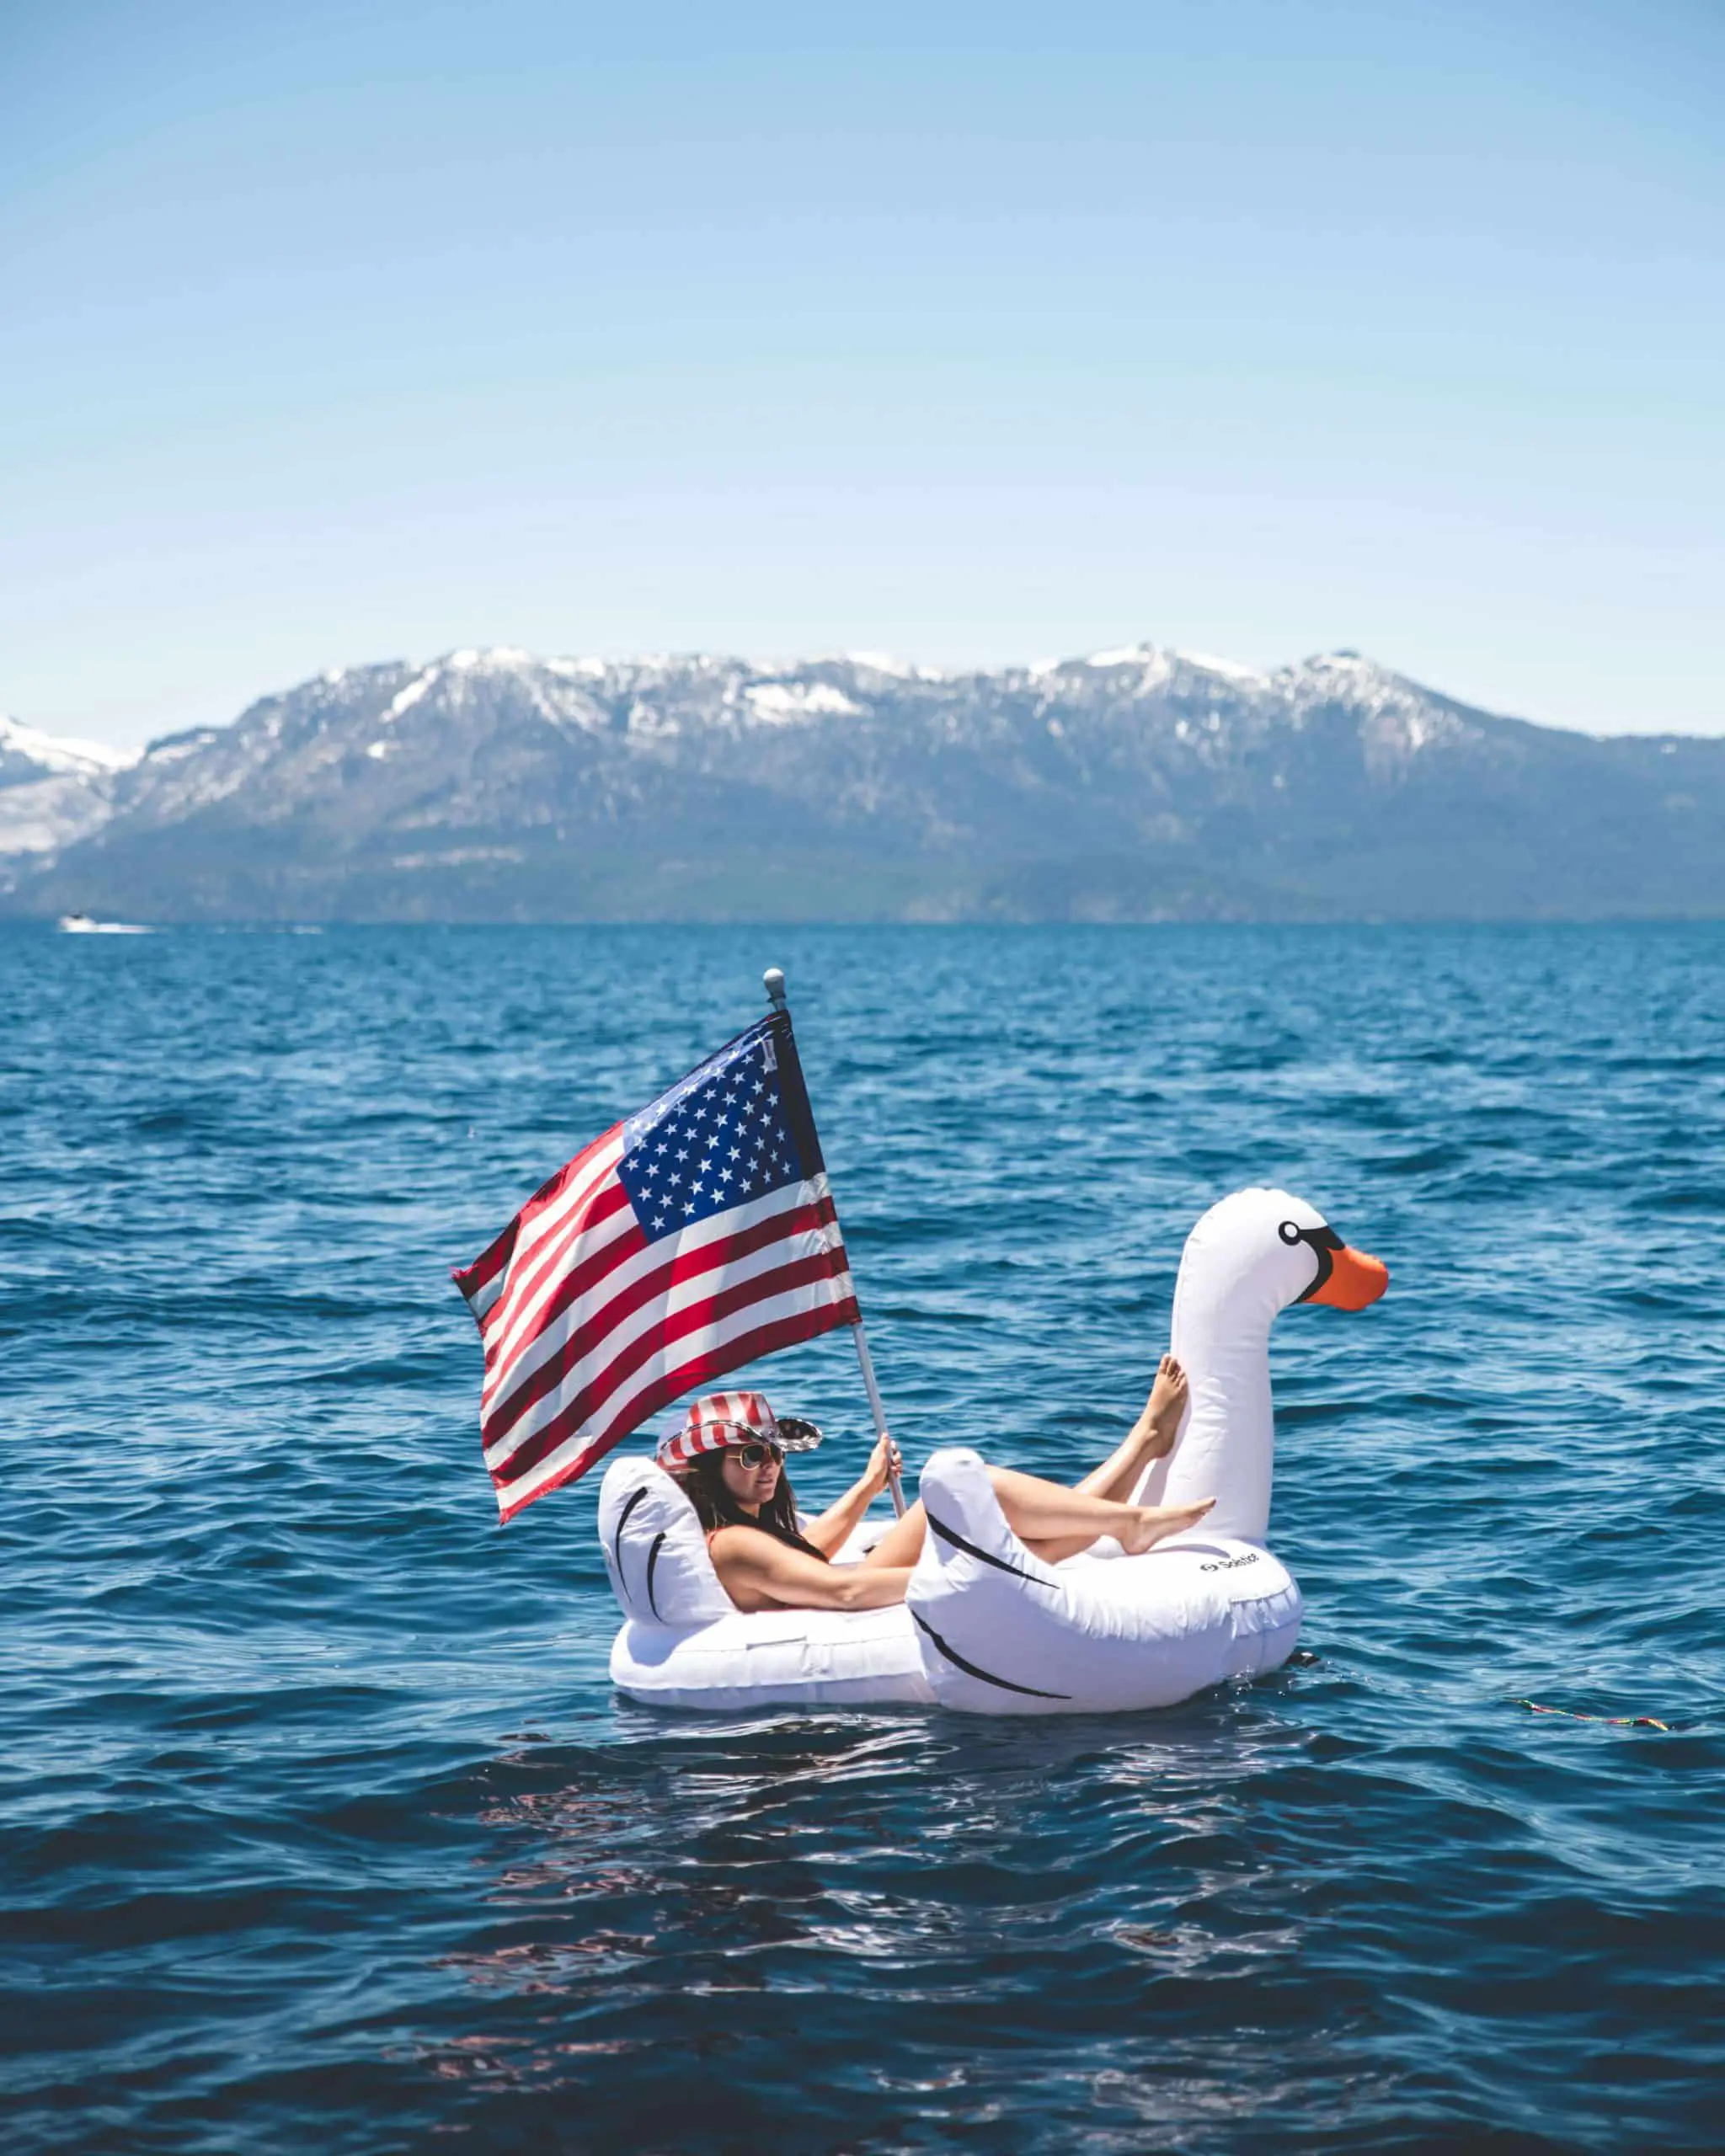 Lake Tahoe Boat Rentals